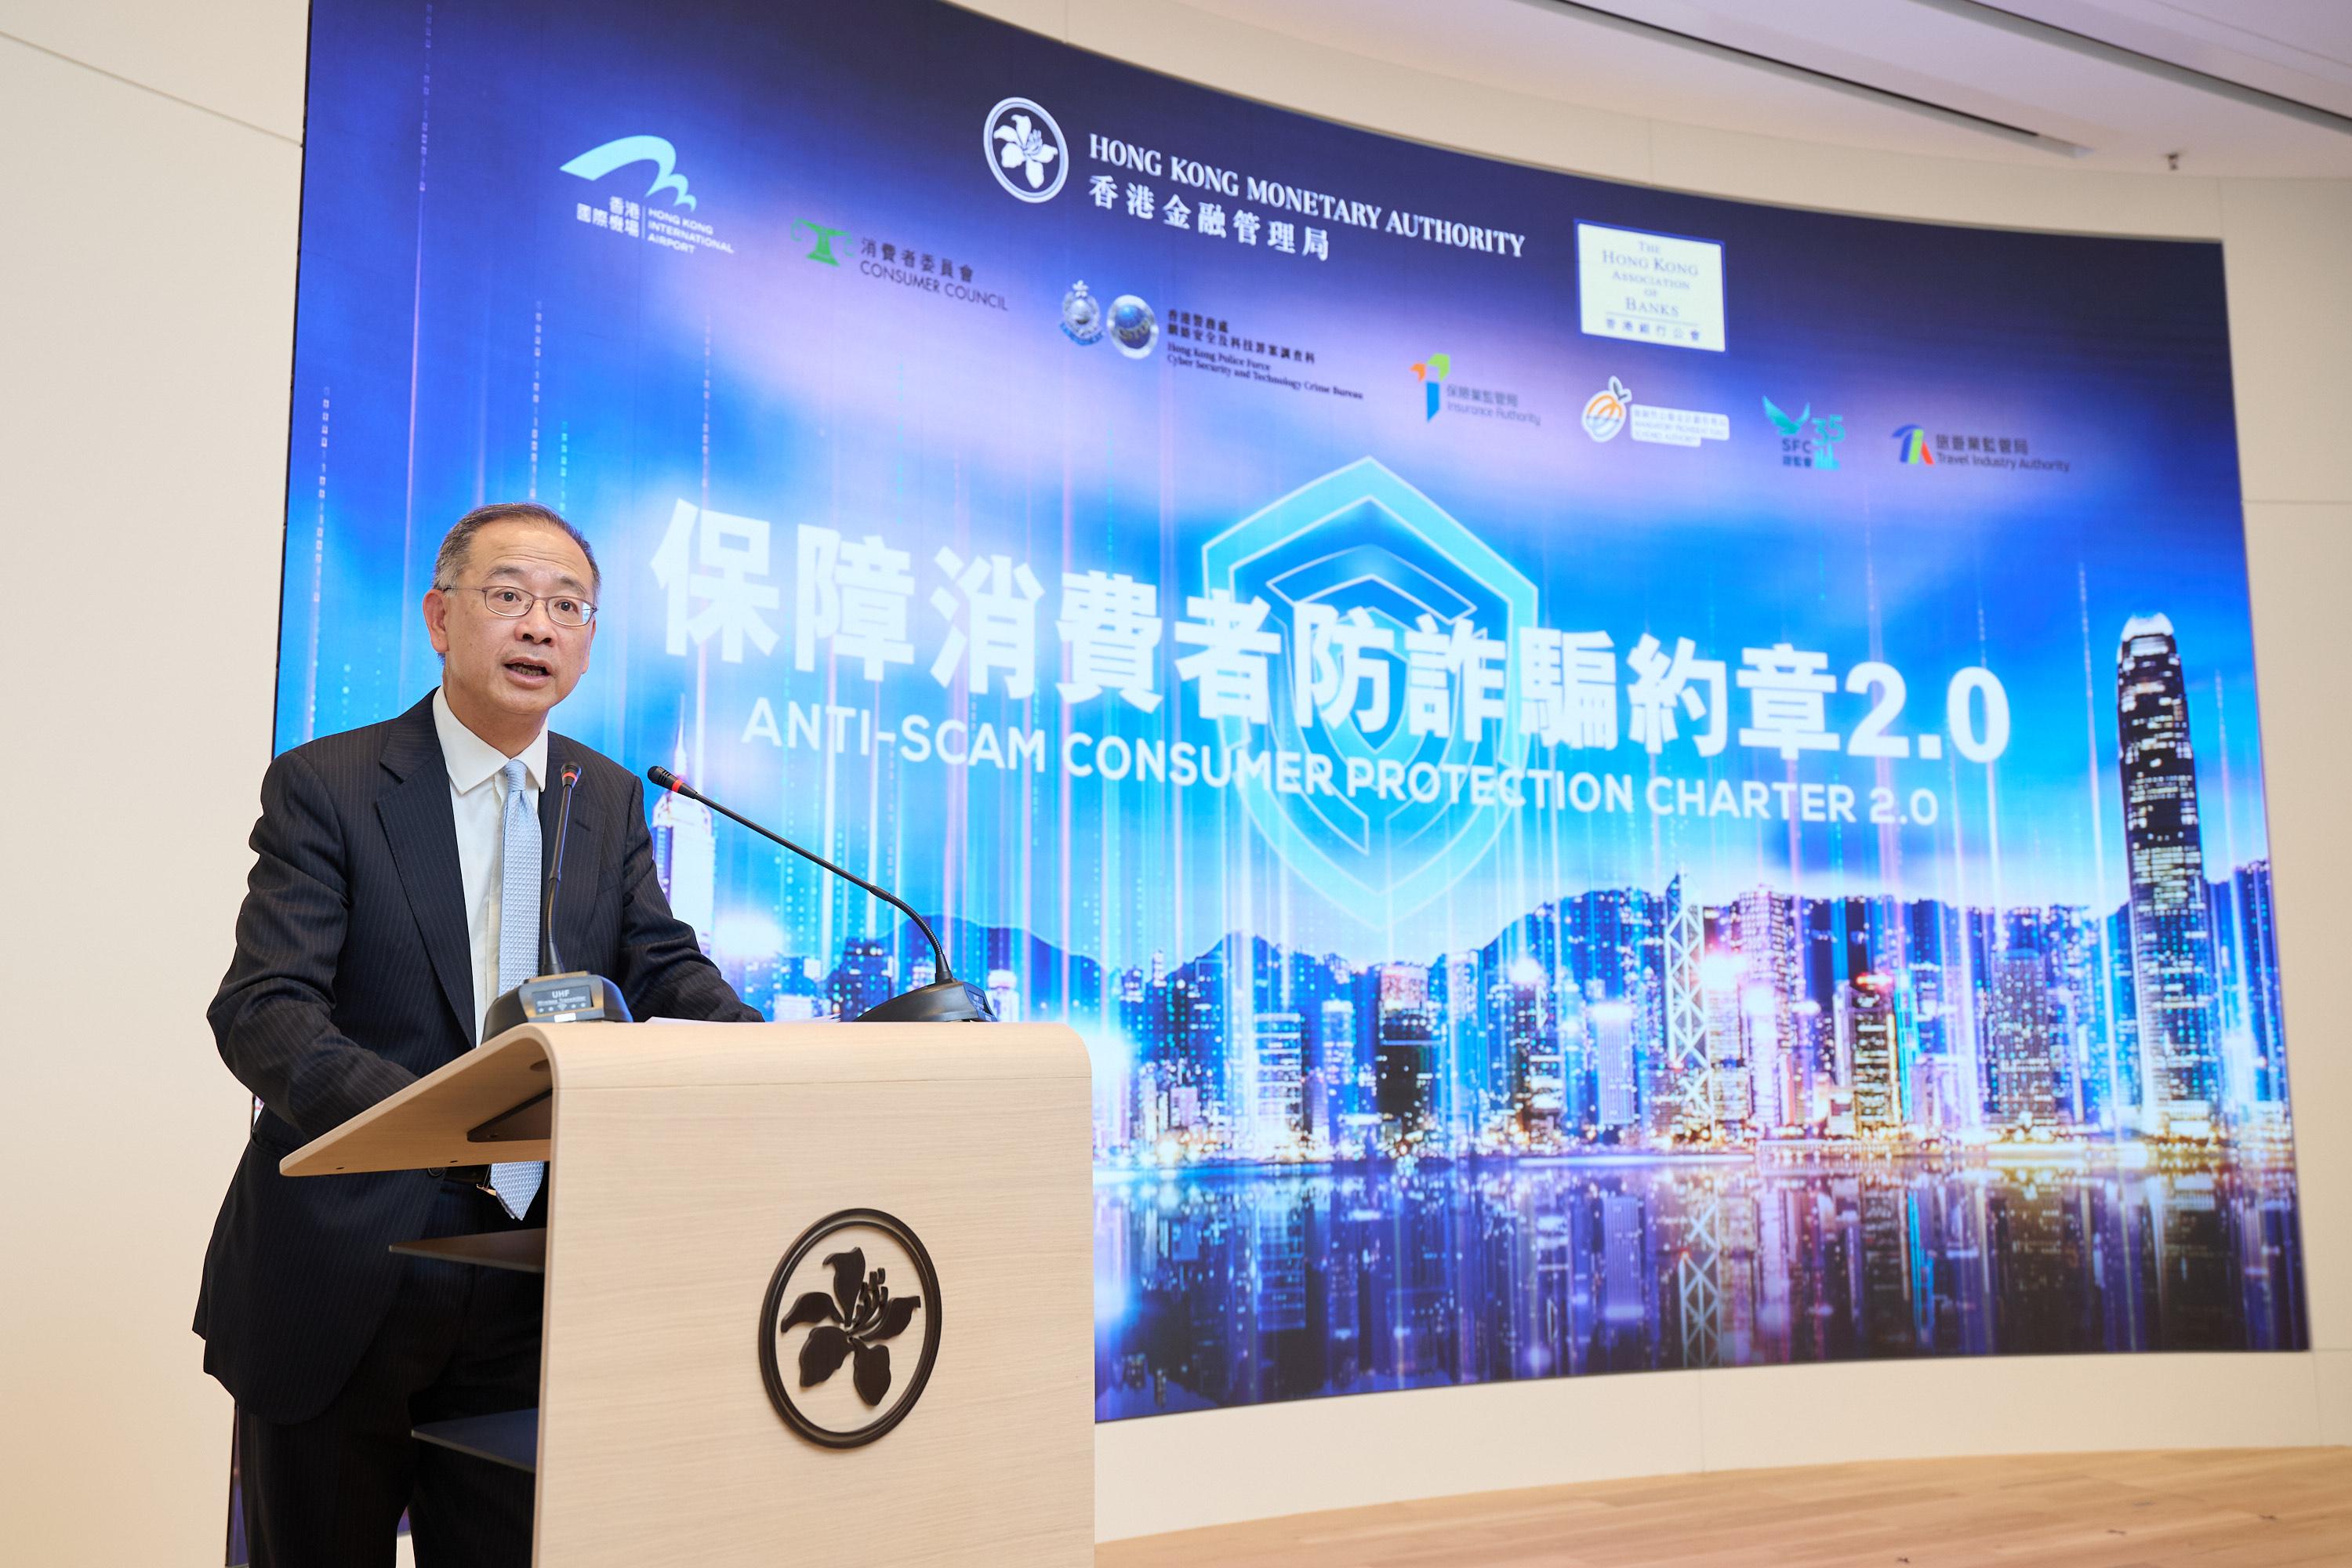 香港金融管理局总裁余伟文于《保障消费者防诈骗约章2.0》的活动上致开幕辞，并宣布有更多机构及商户参与约章。